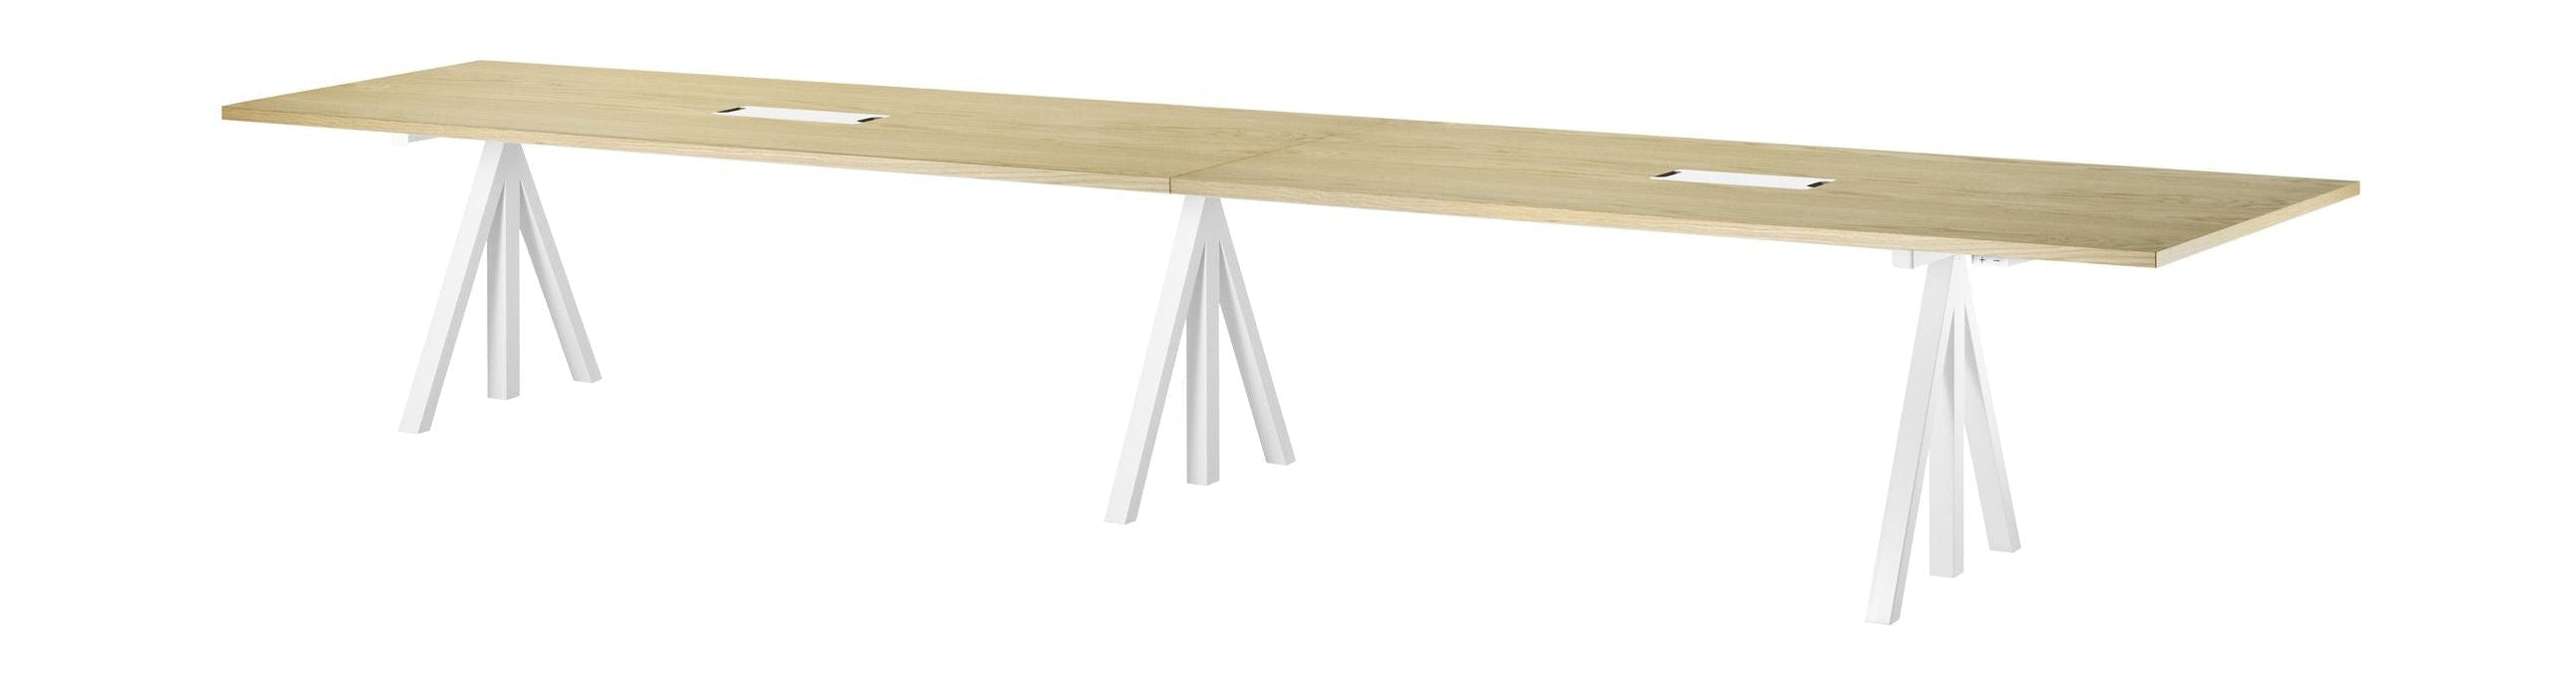 Streng møbelhøyde justerbar konferansebord eik, 90x180 cm